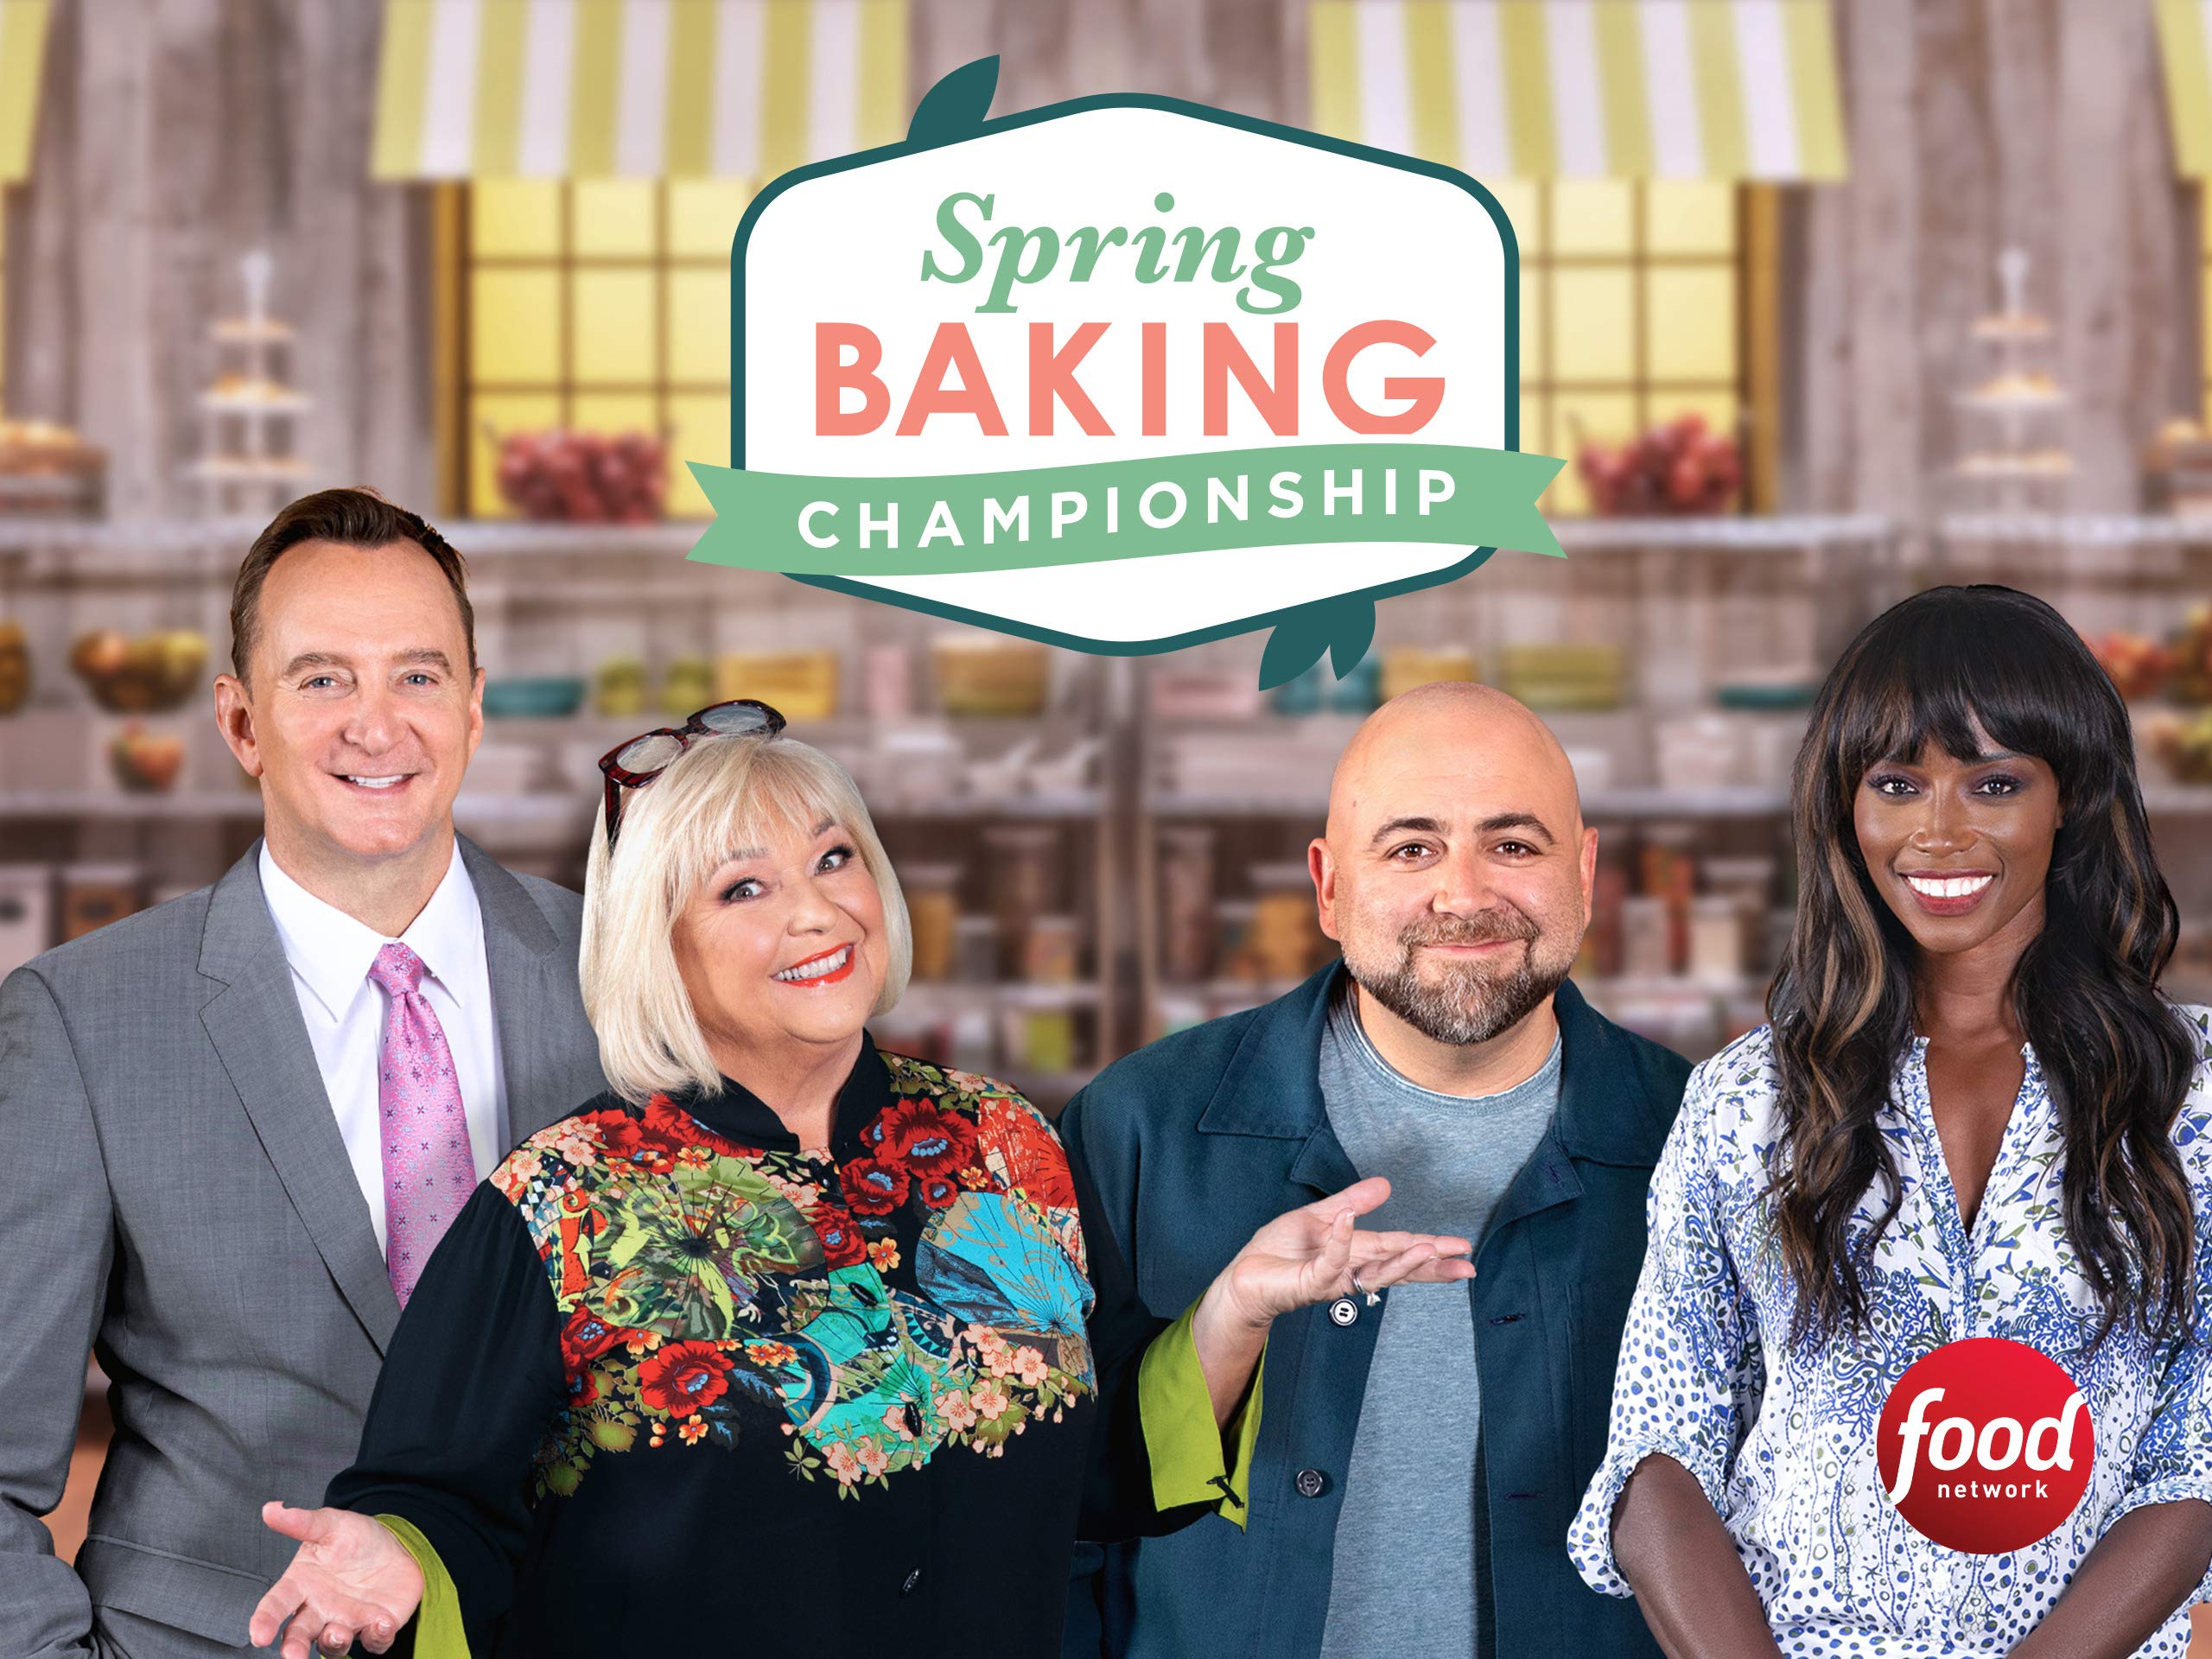 Spring Baking Championship Season 7 Details DroidJournal